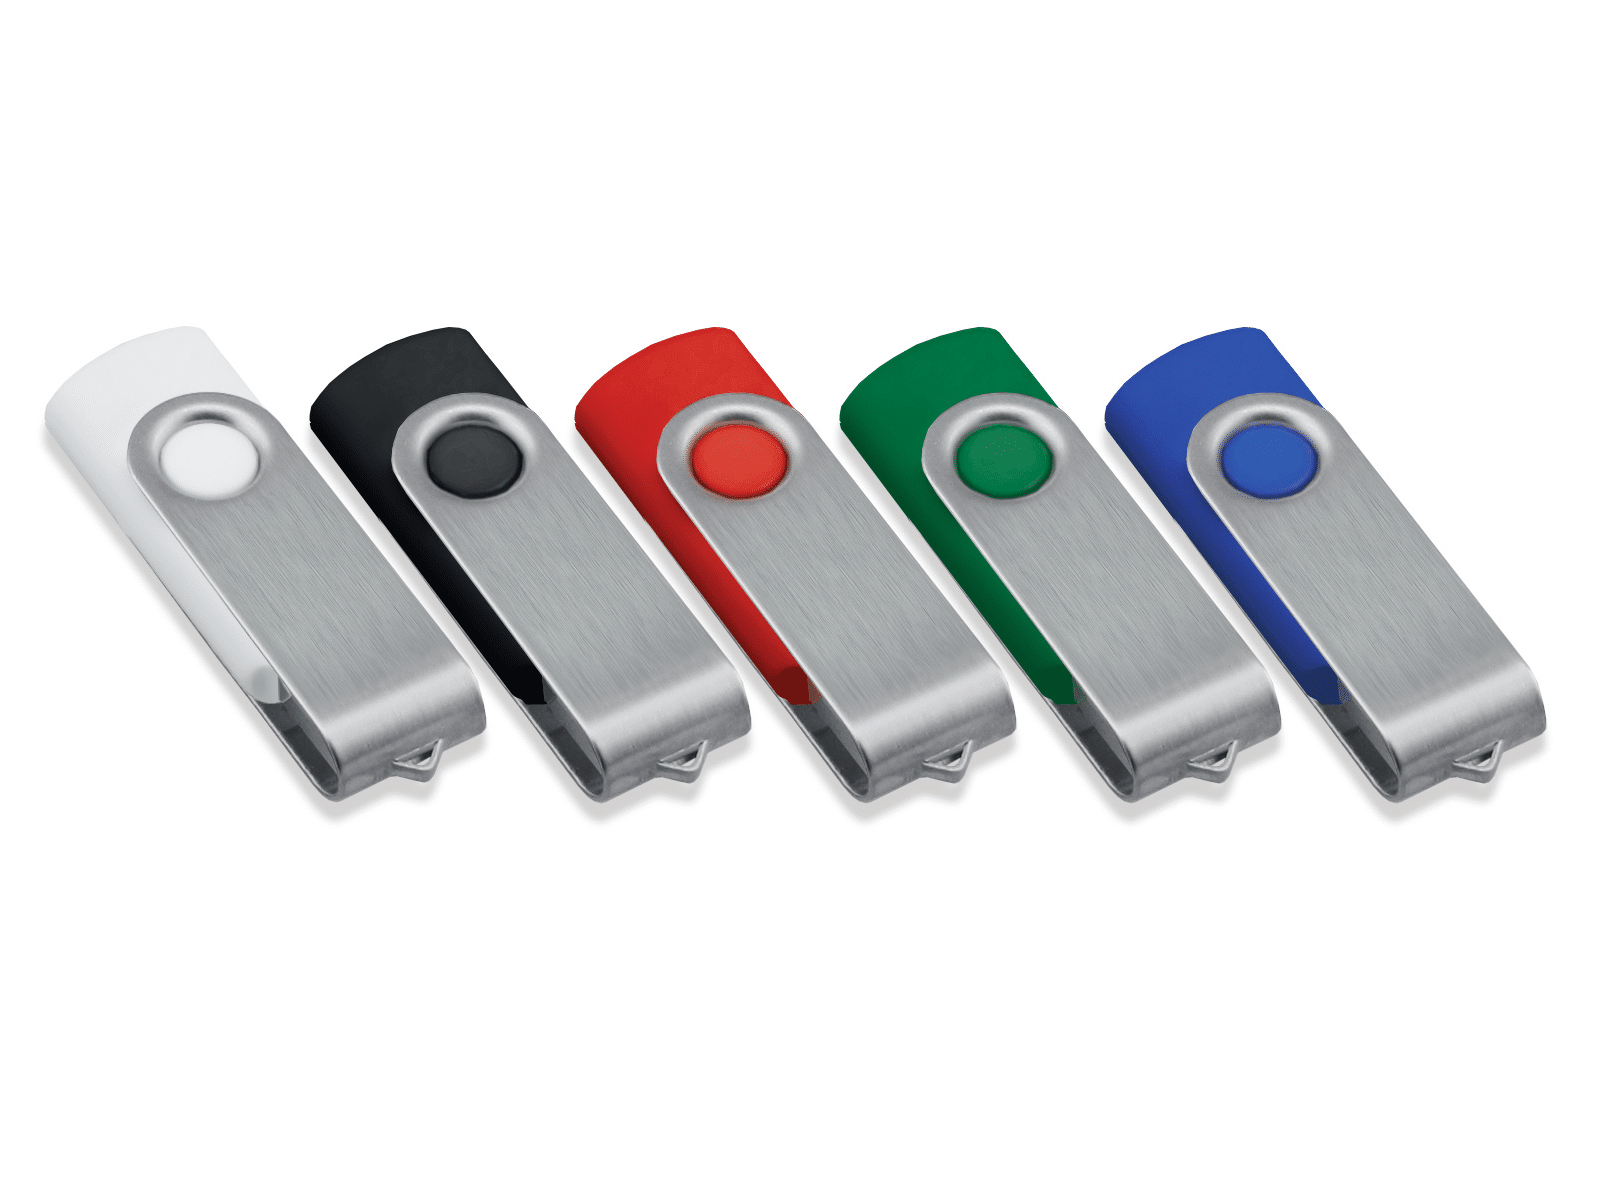 Clés USB personnalisées sur coque métal pivotante